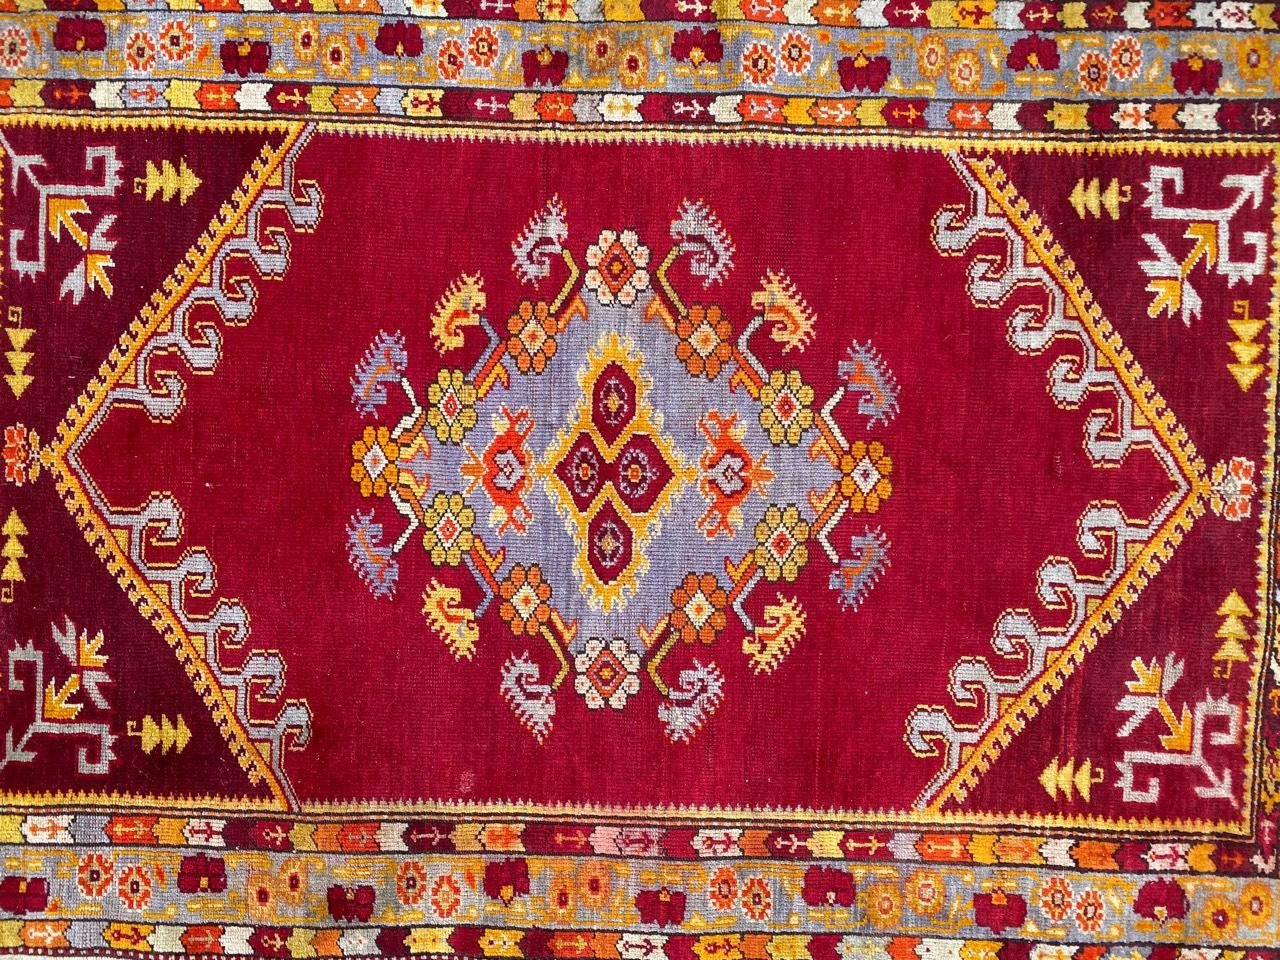 Sehr schöner türkischer Teppich aus dem frühen 20. Jahrhundert mit einem schönen Muster mit zentralem Medaillon und schönen Farben mit Rot, Blau, Gelb, Orange und Violett, vollständig und fein handgeknüpft mit Wollsamt auf Wollfond.

✨✨✨
